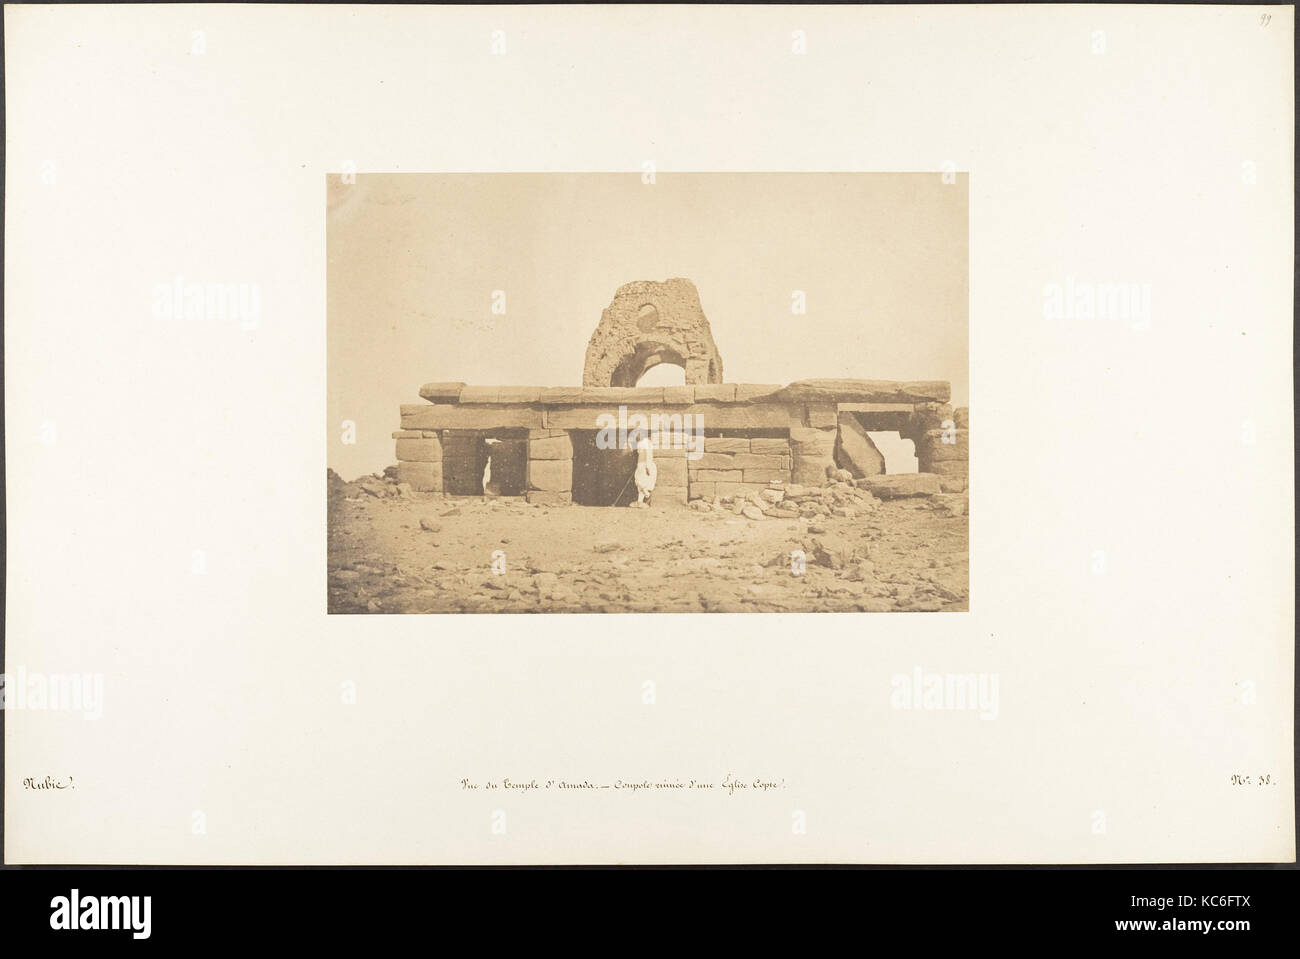 Vue du Temple d'Amada-Coupole ruinée d'une Église Copte, Maxime Du Camp, 2. April 1850 Stockfoto